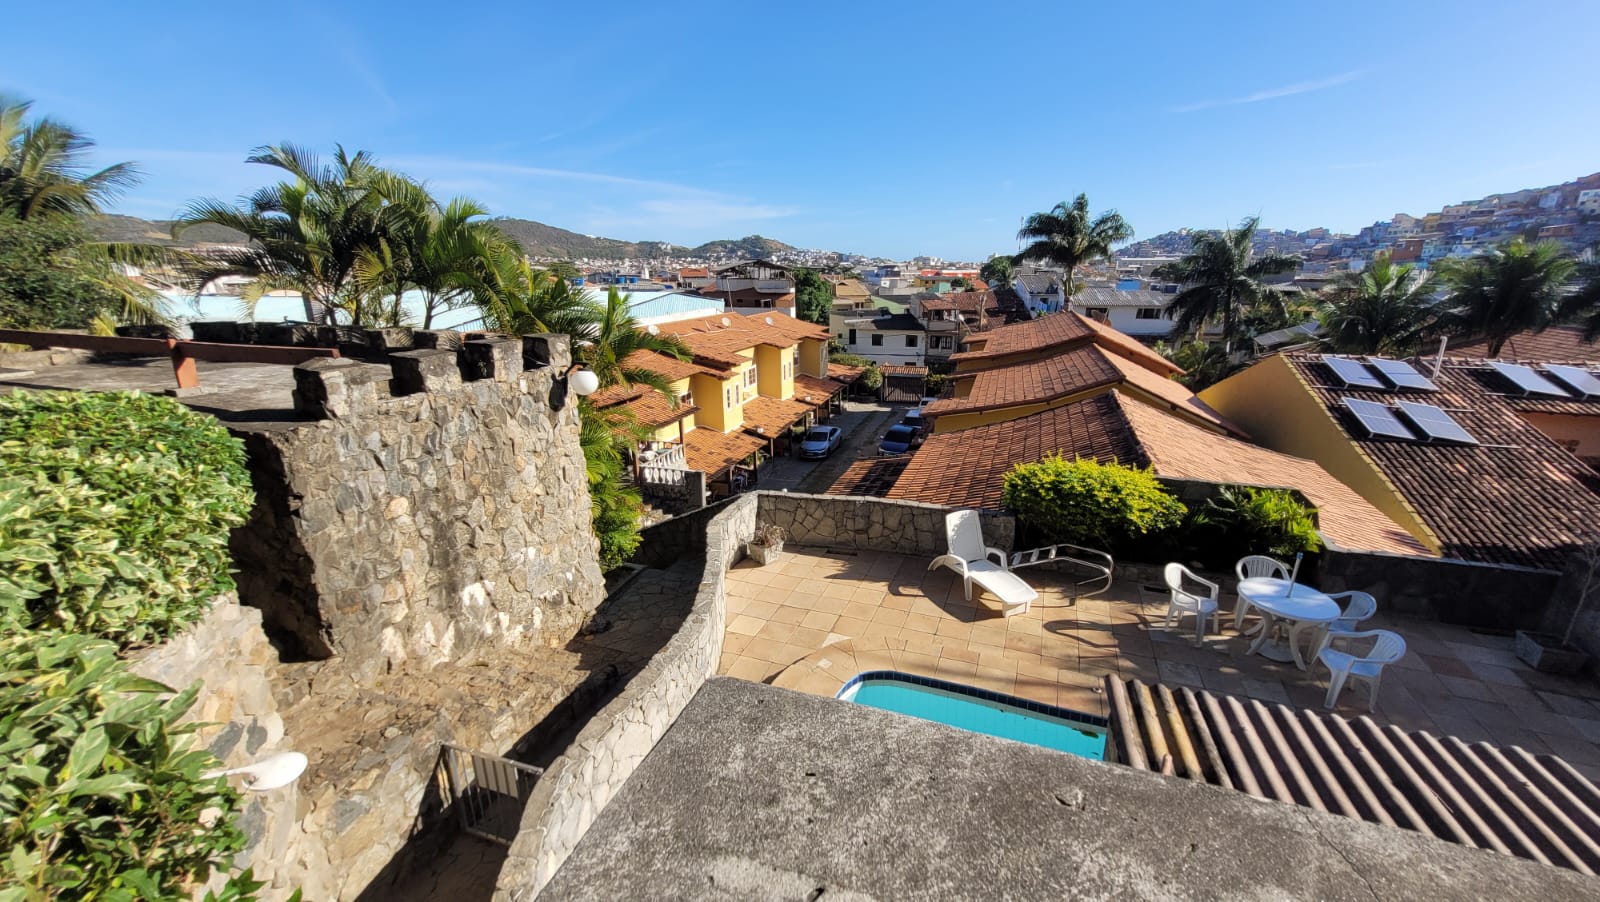 Casa à venda em condomínio com 03 quartos próximo à Praia dos Anjos.